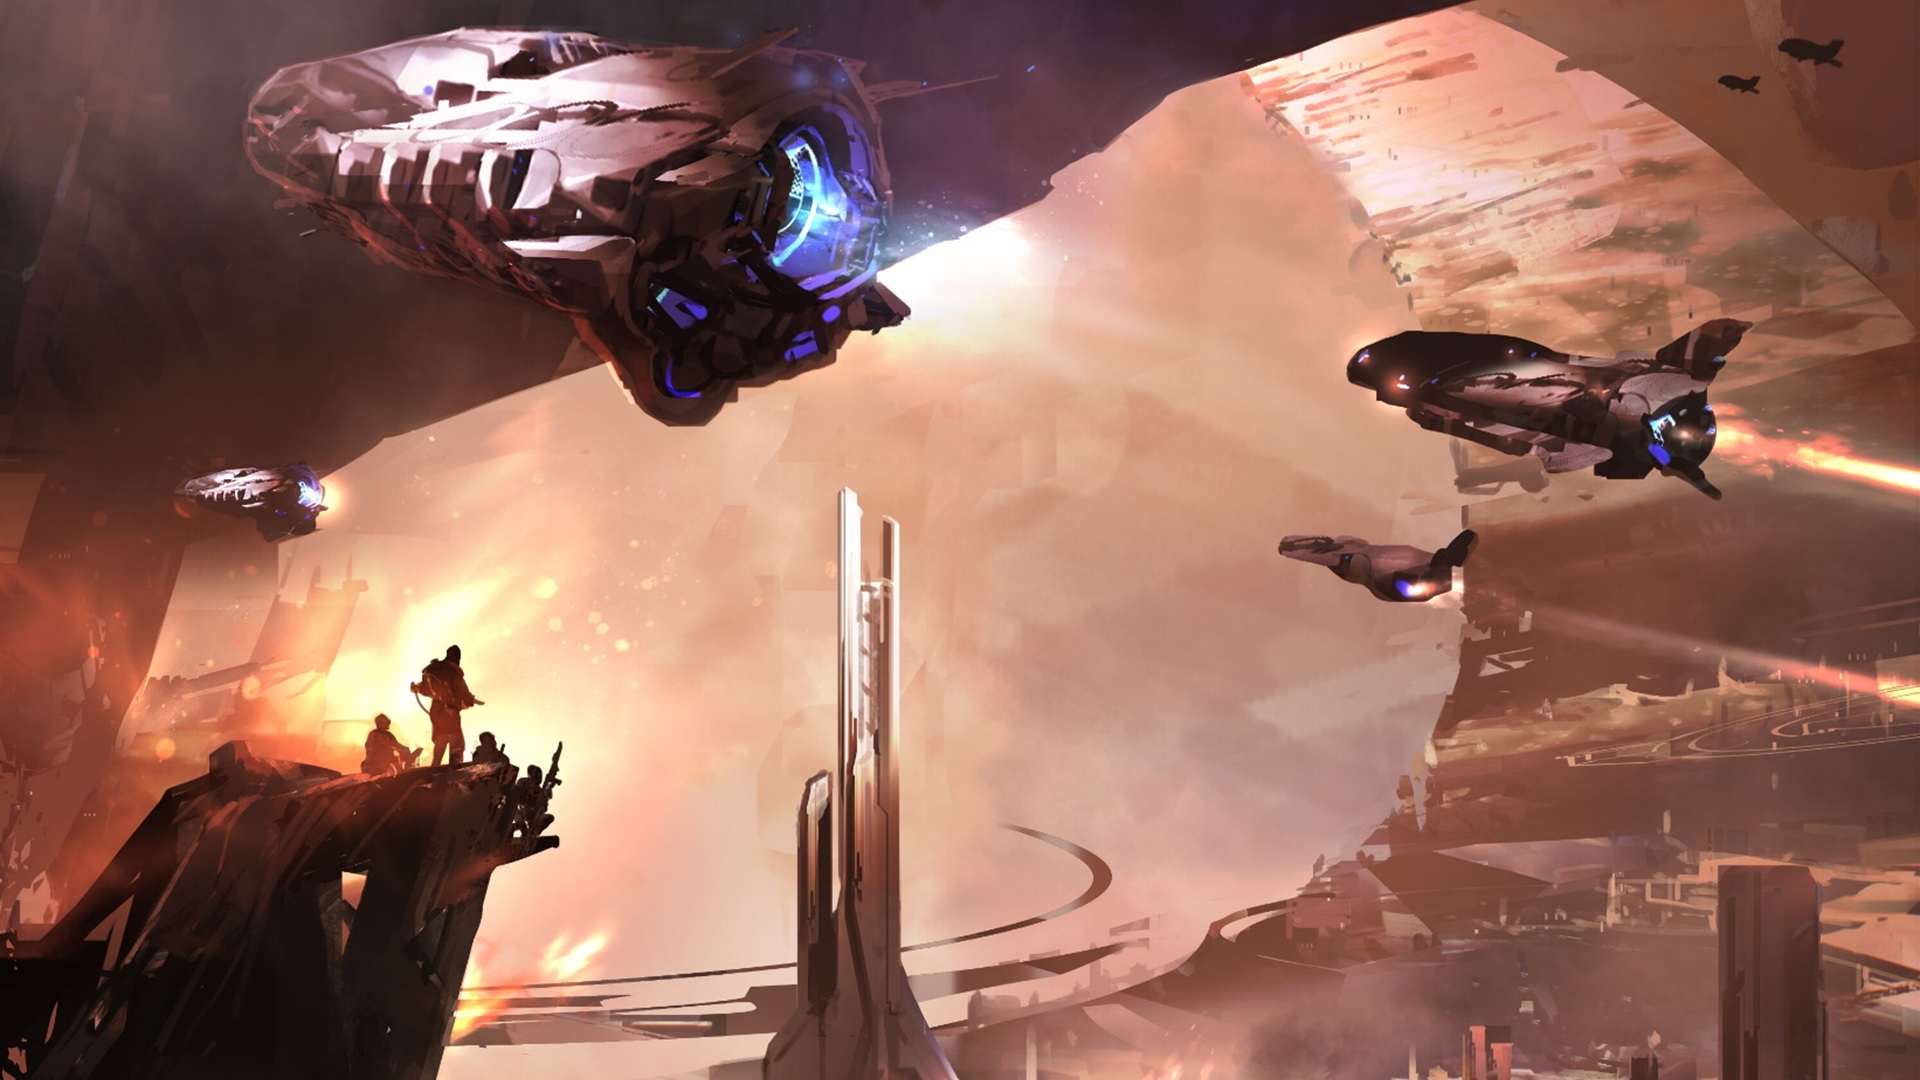 Crop of Halo: Primordium's cover art